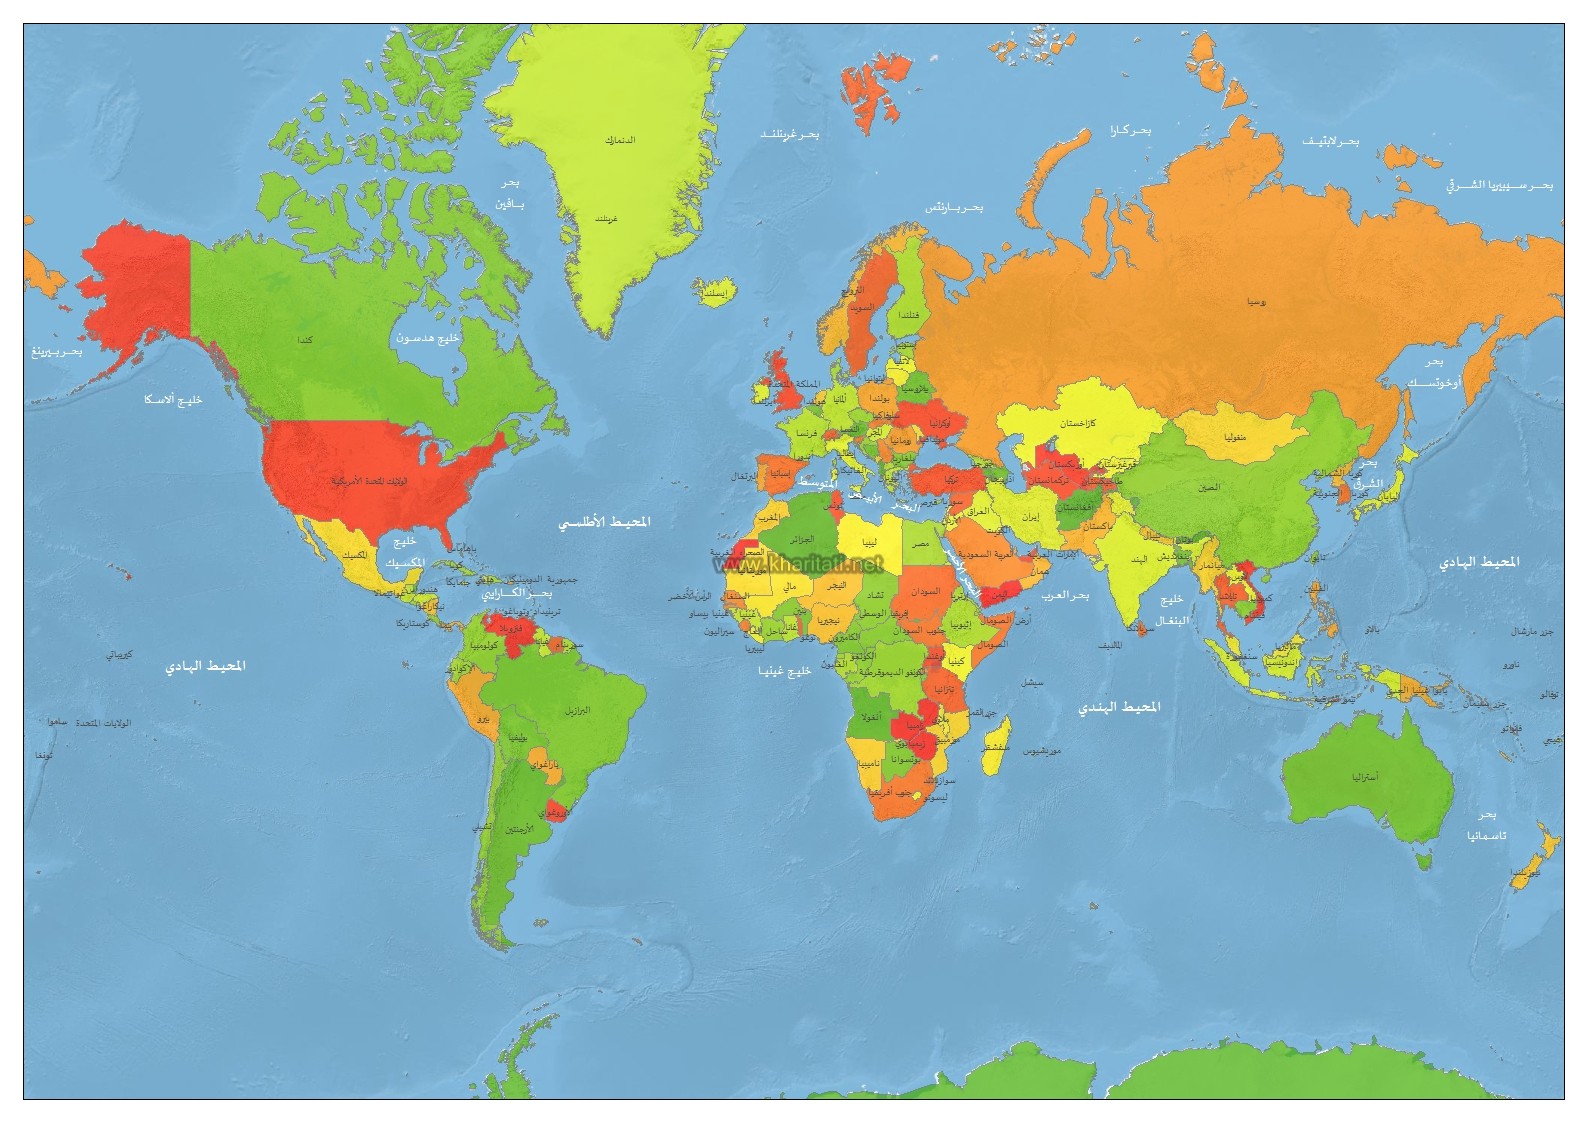 5740 2 خريطة العالم صماء - الصور الدقيقة لخريطة العالم الصماء اخلاص سيف